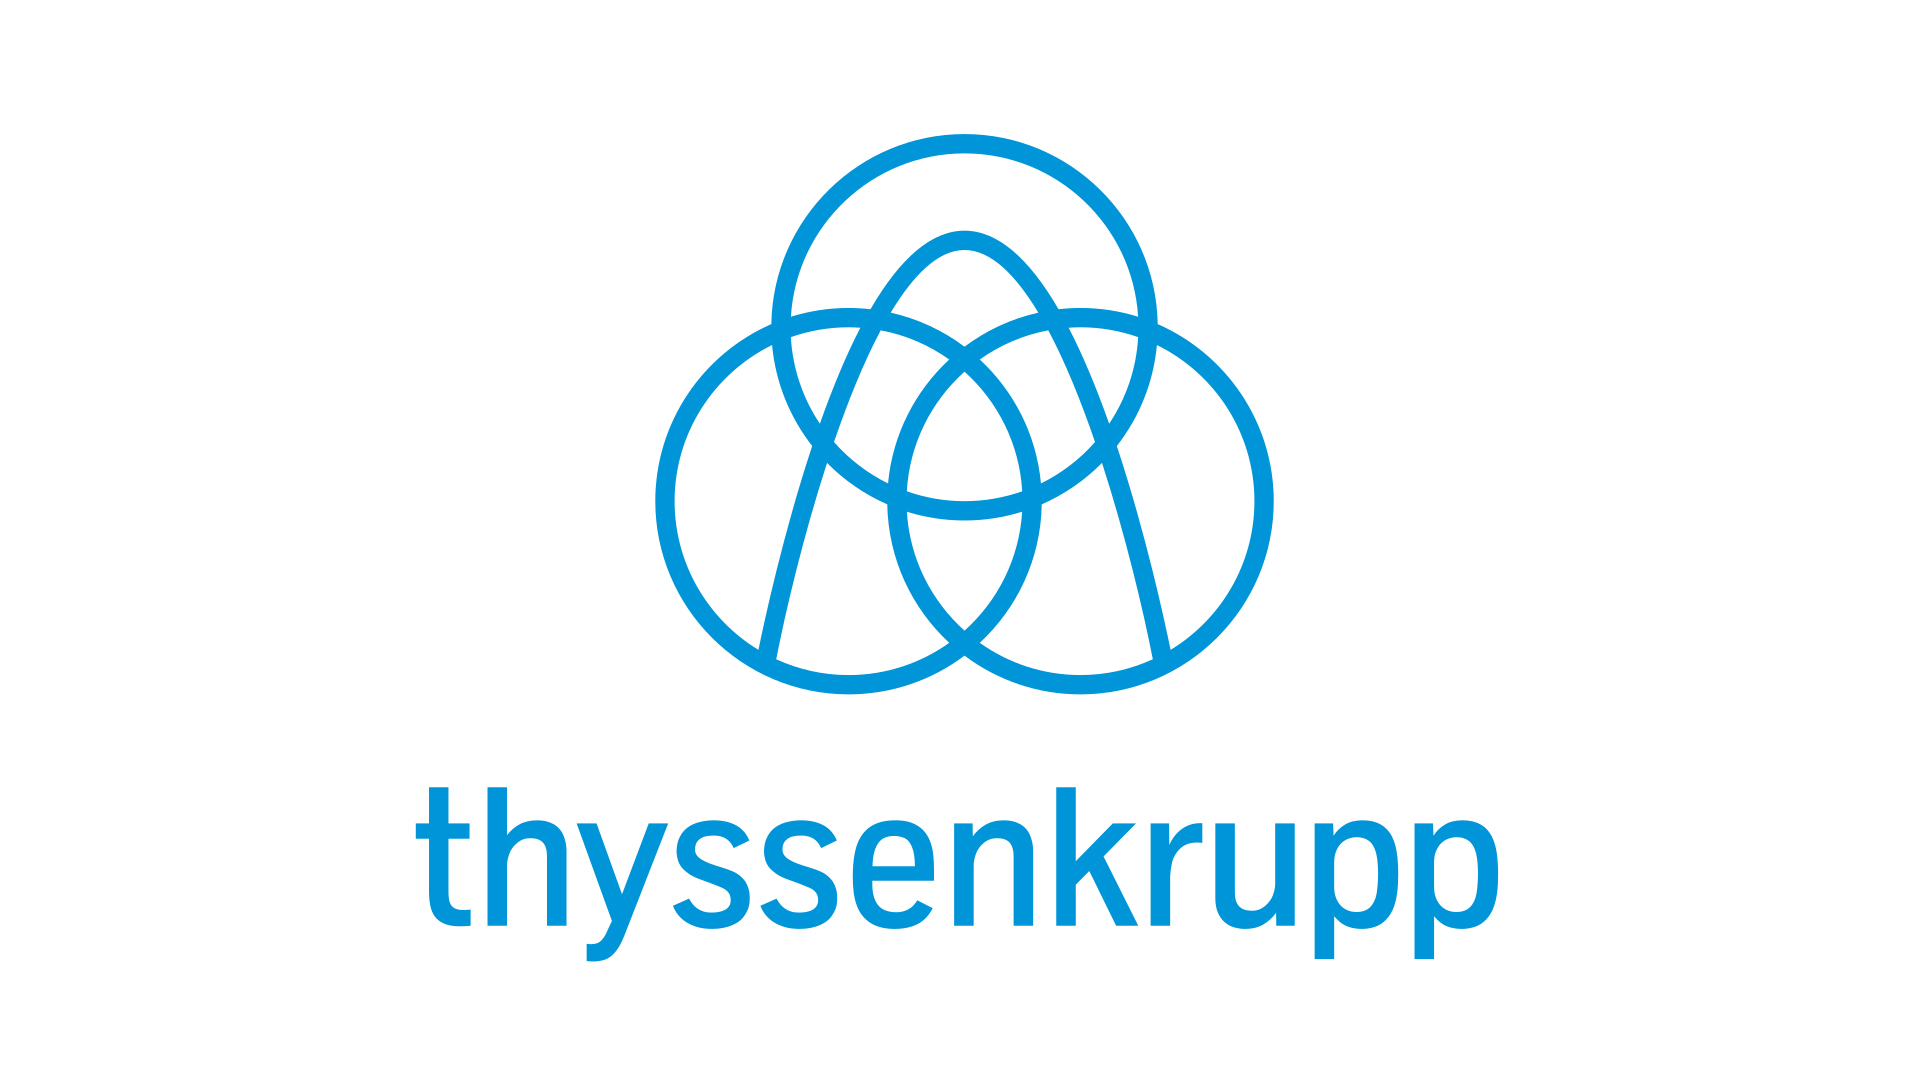 logo_referenzen_tyssenkrupp